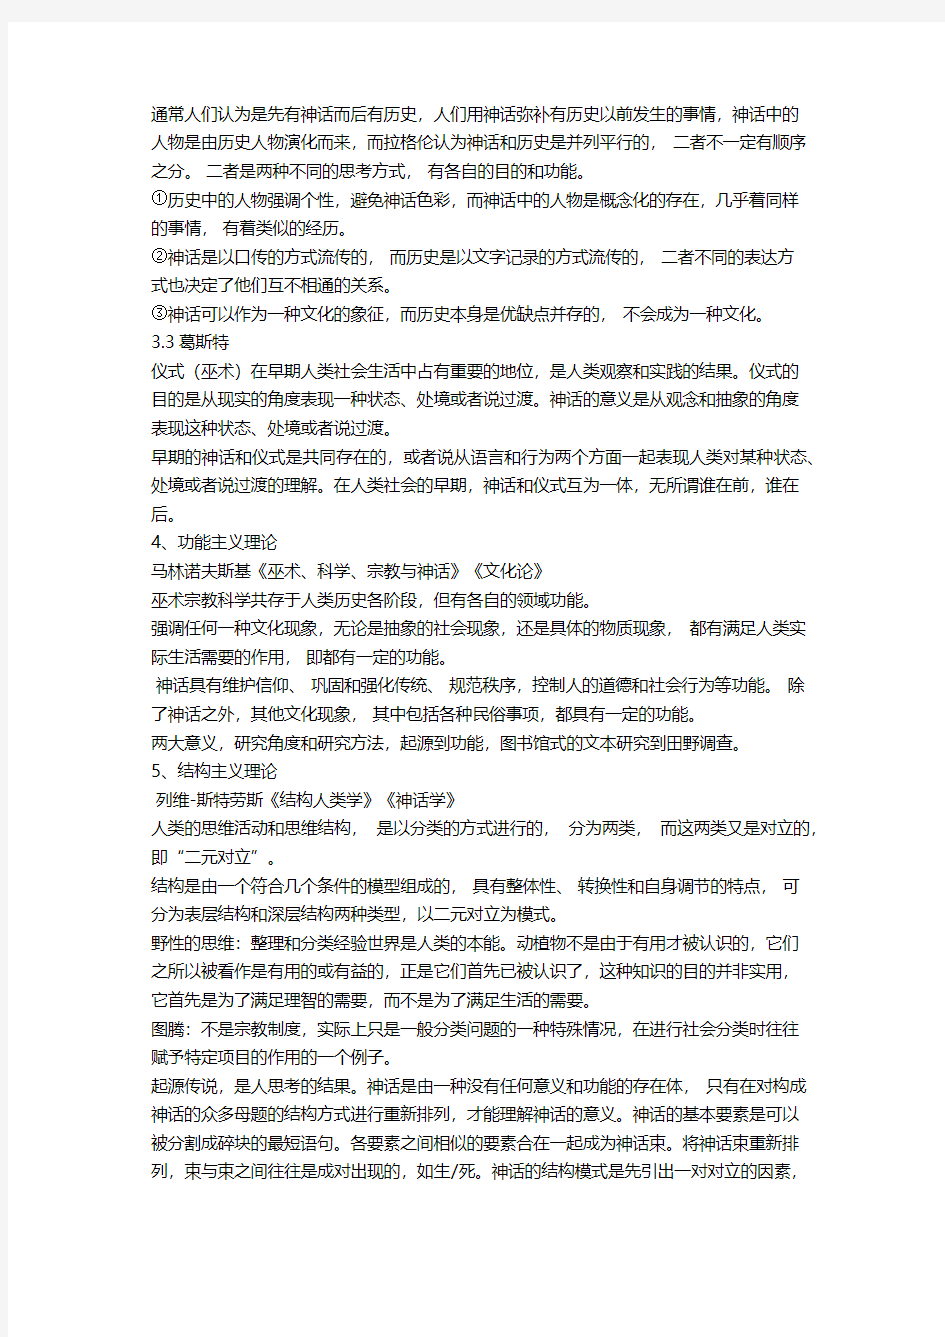 北京大学民俗研究课程笔记整理